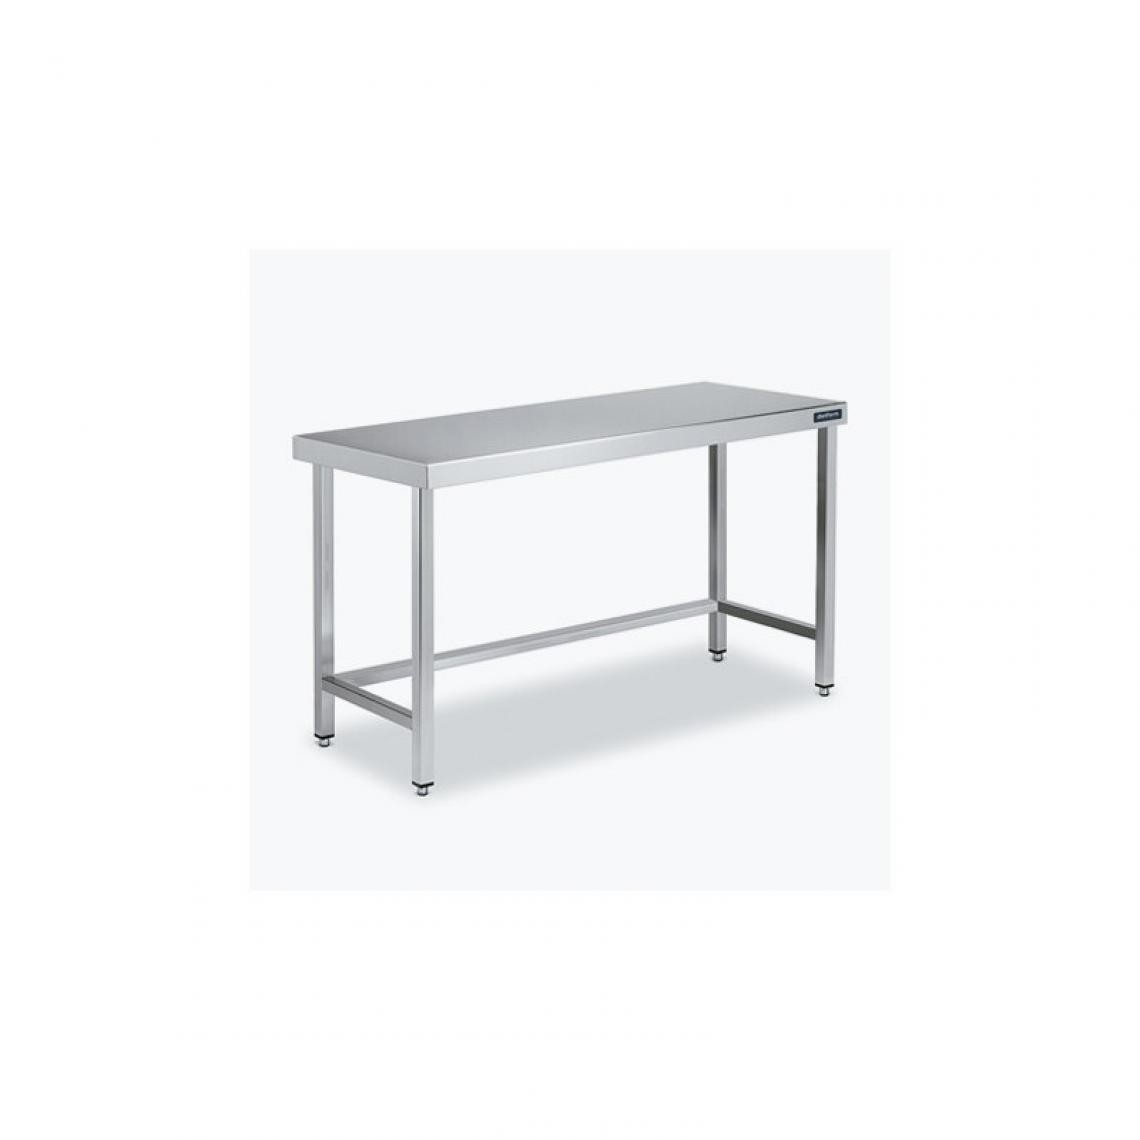 DISTFORM - Table Centrale 600x700X600 avec Renforts - Distform - Inox 18/101800x700x600mm - Tables à manger